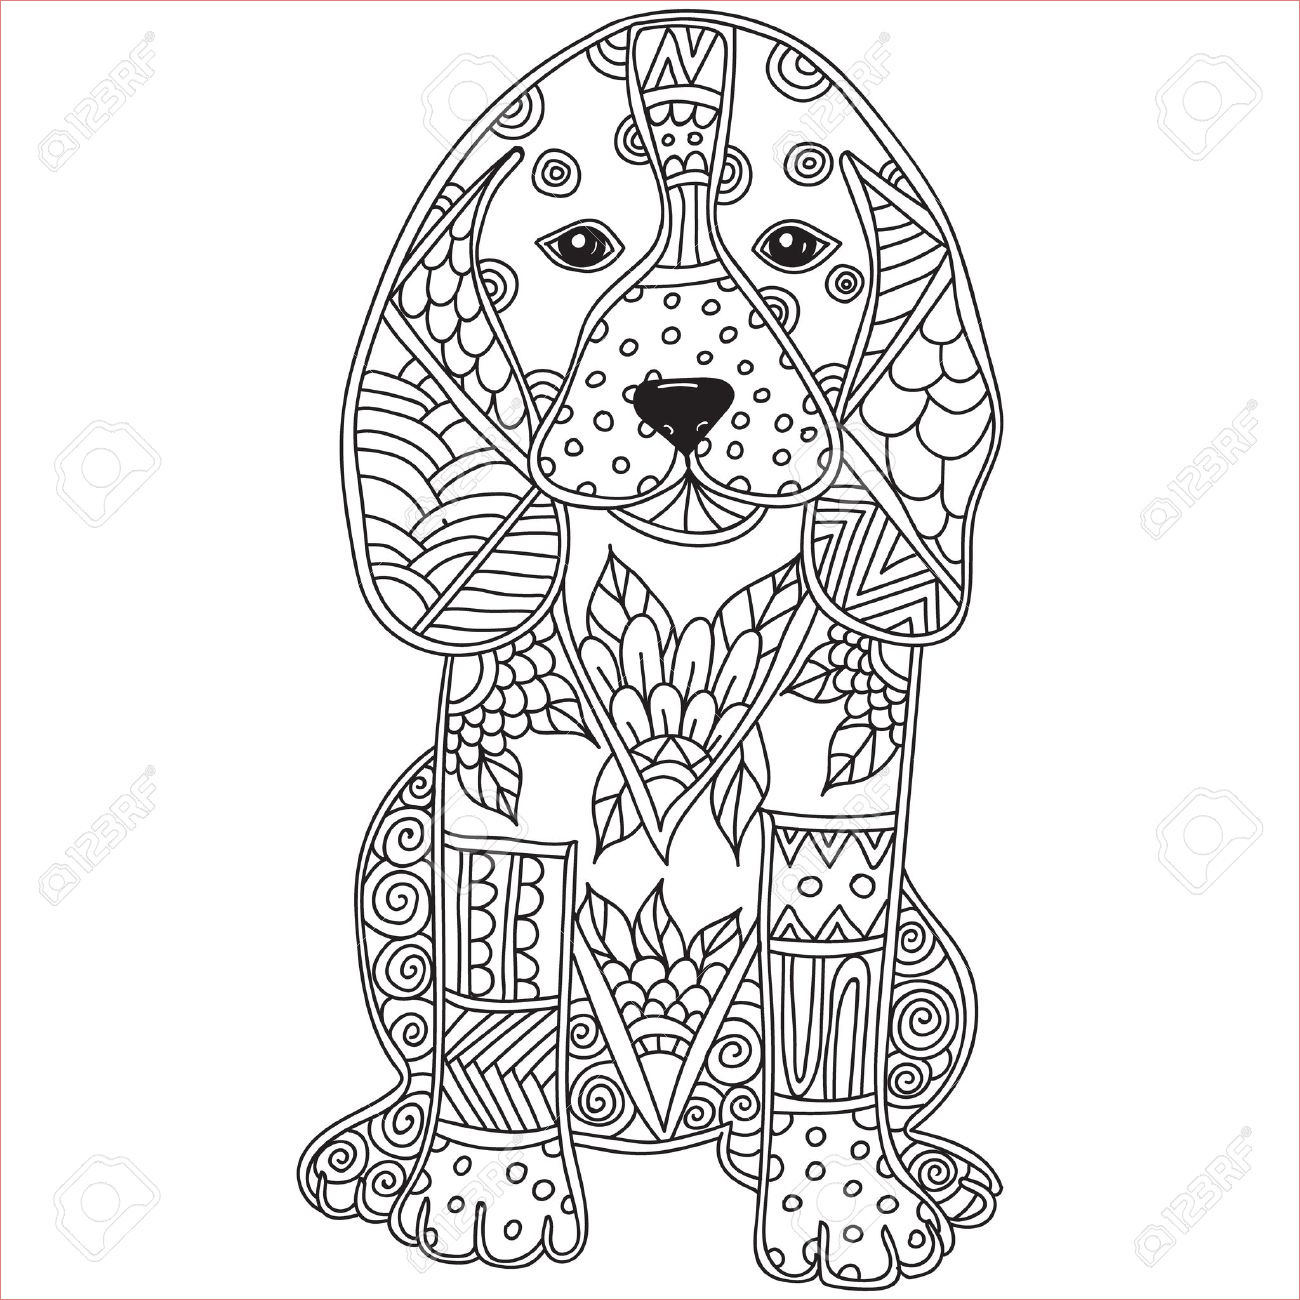 coloriage chien adulte anti stress ou enfants doodle animal dessine encequiconcerne coloriage adulte animaux